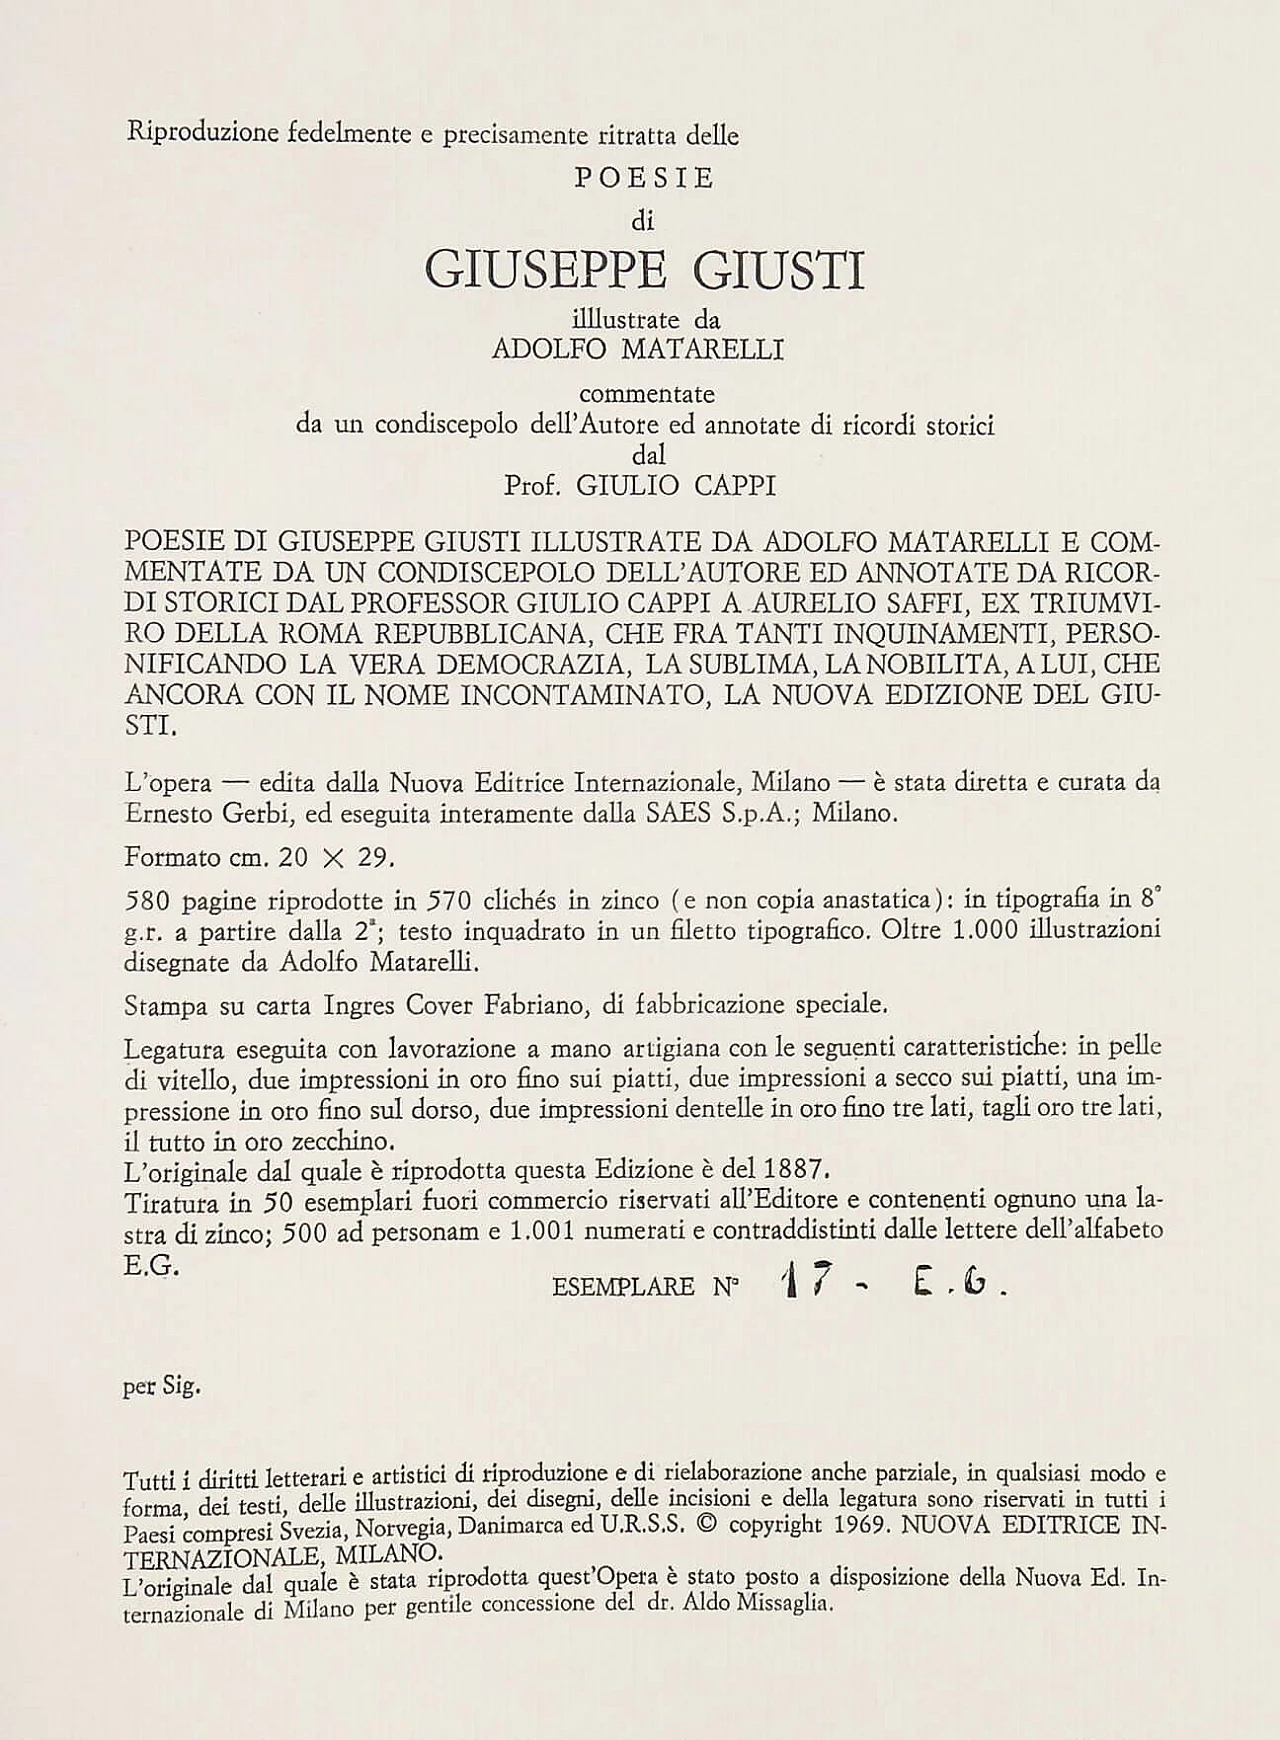 Libro di poesie di Giuseppe Giusti illustrate da A. Matarelli, 1969 11